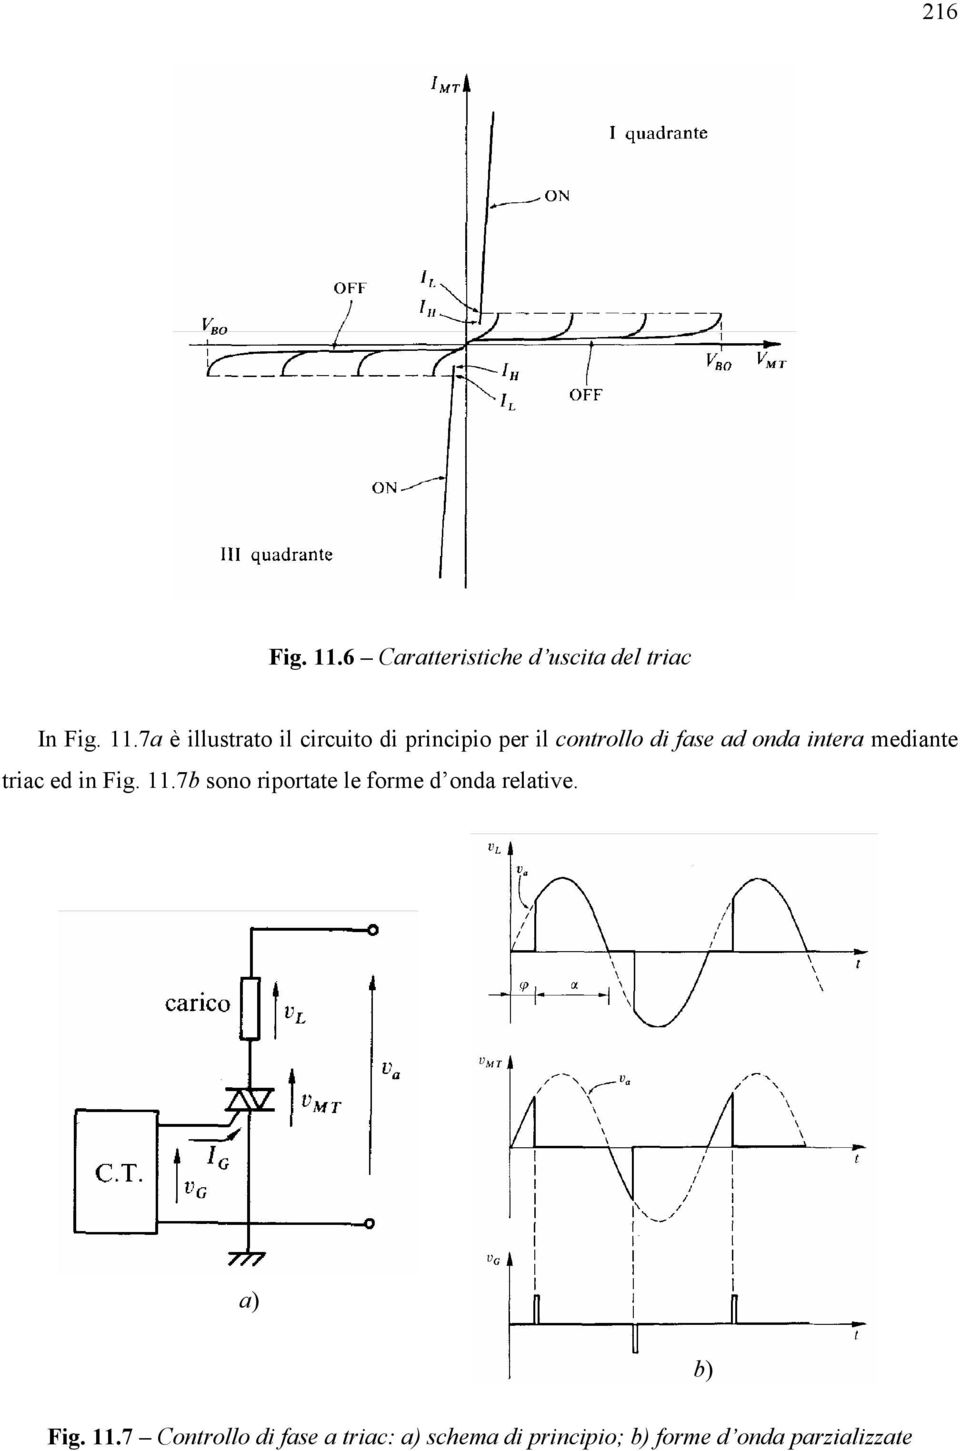 7a è illustrato il circuito di principio per il controllo di fase ad onda